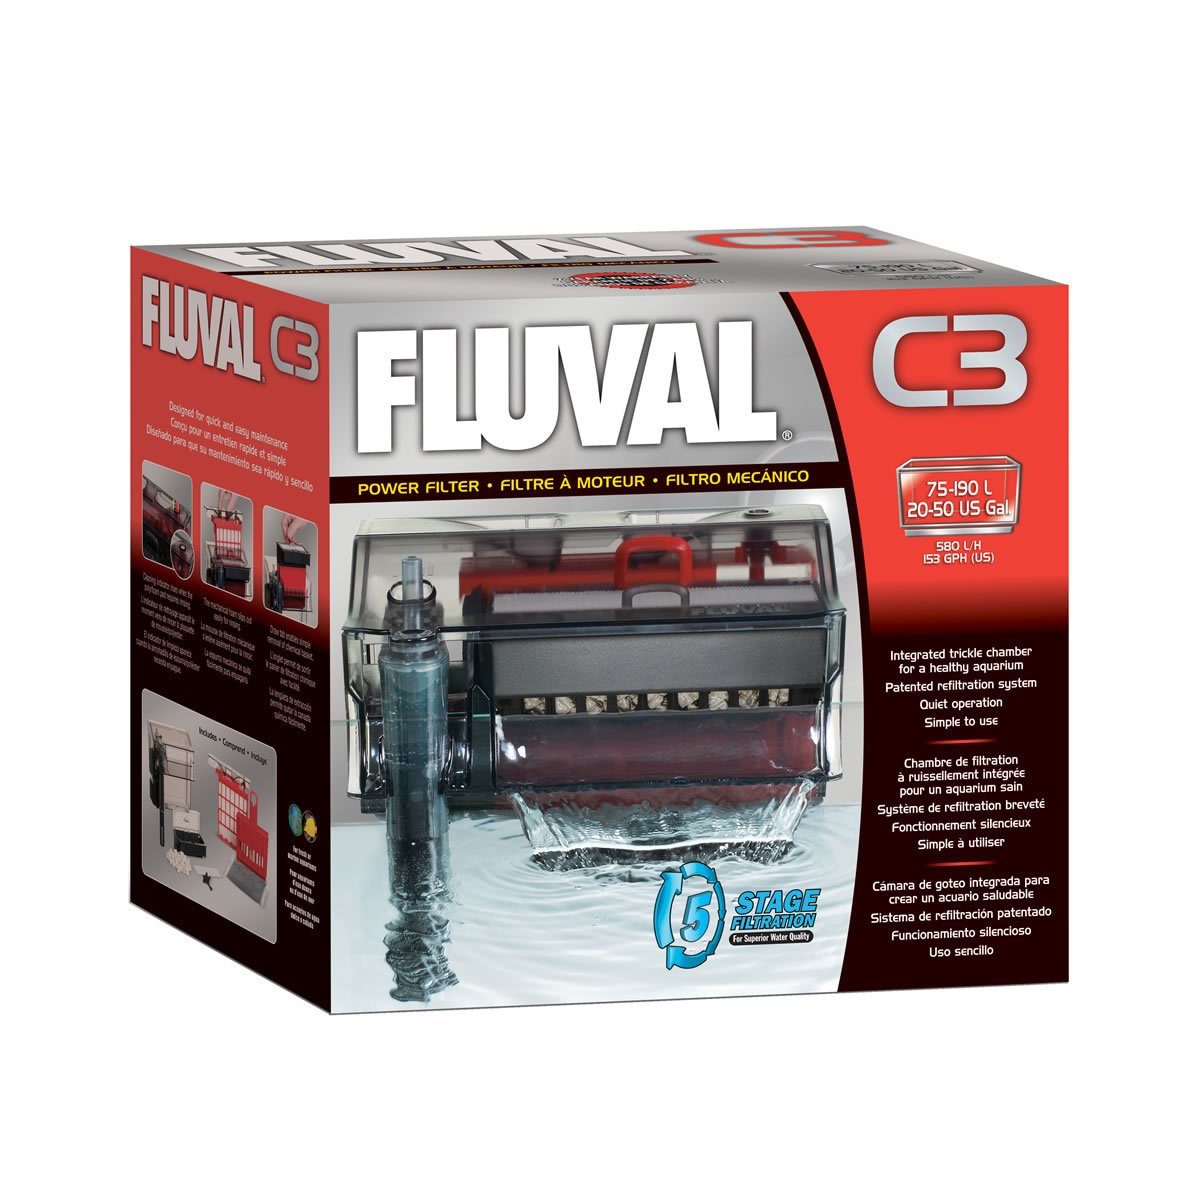 FLUVAL Aquarienpumpe Filter C3